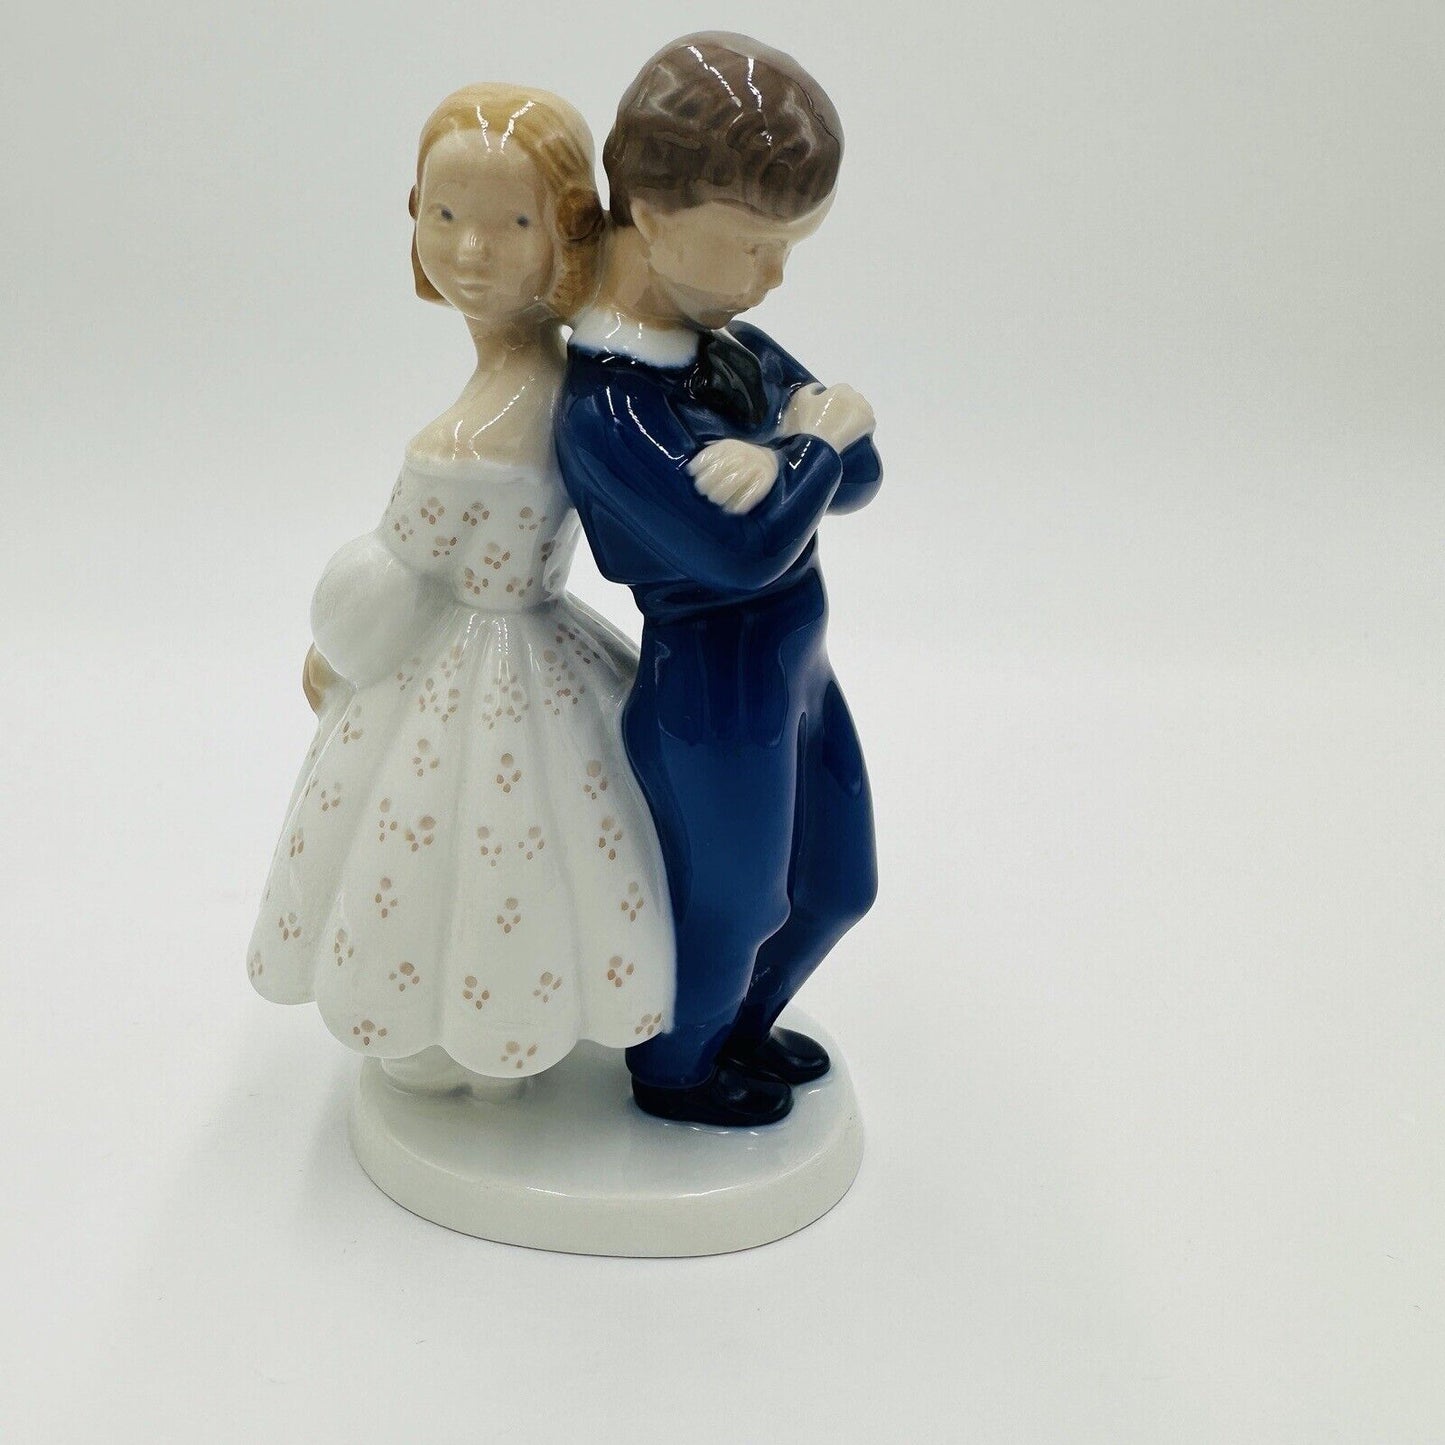 Bing & Grondahl Figurine Girl Pardon Me Couple Denmark Porcelain Boy #2372